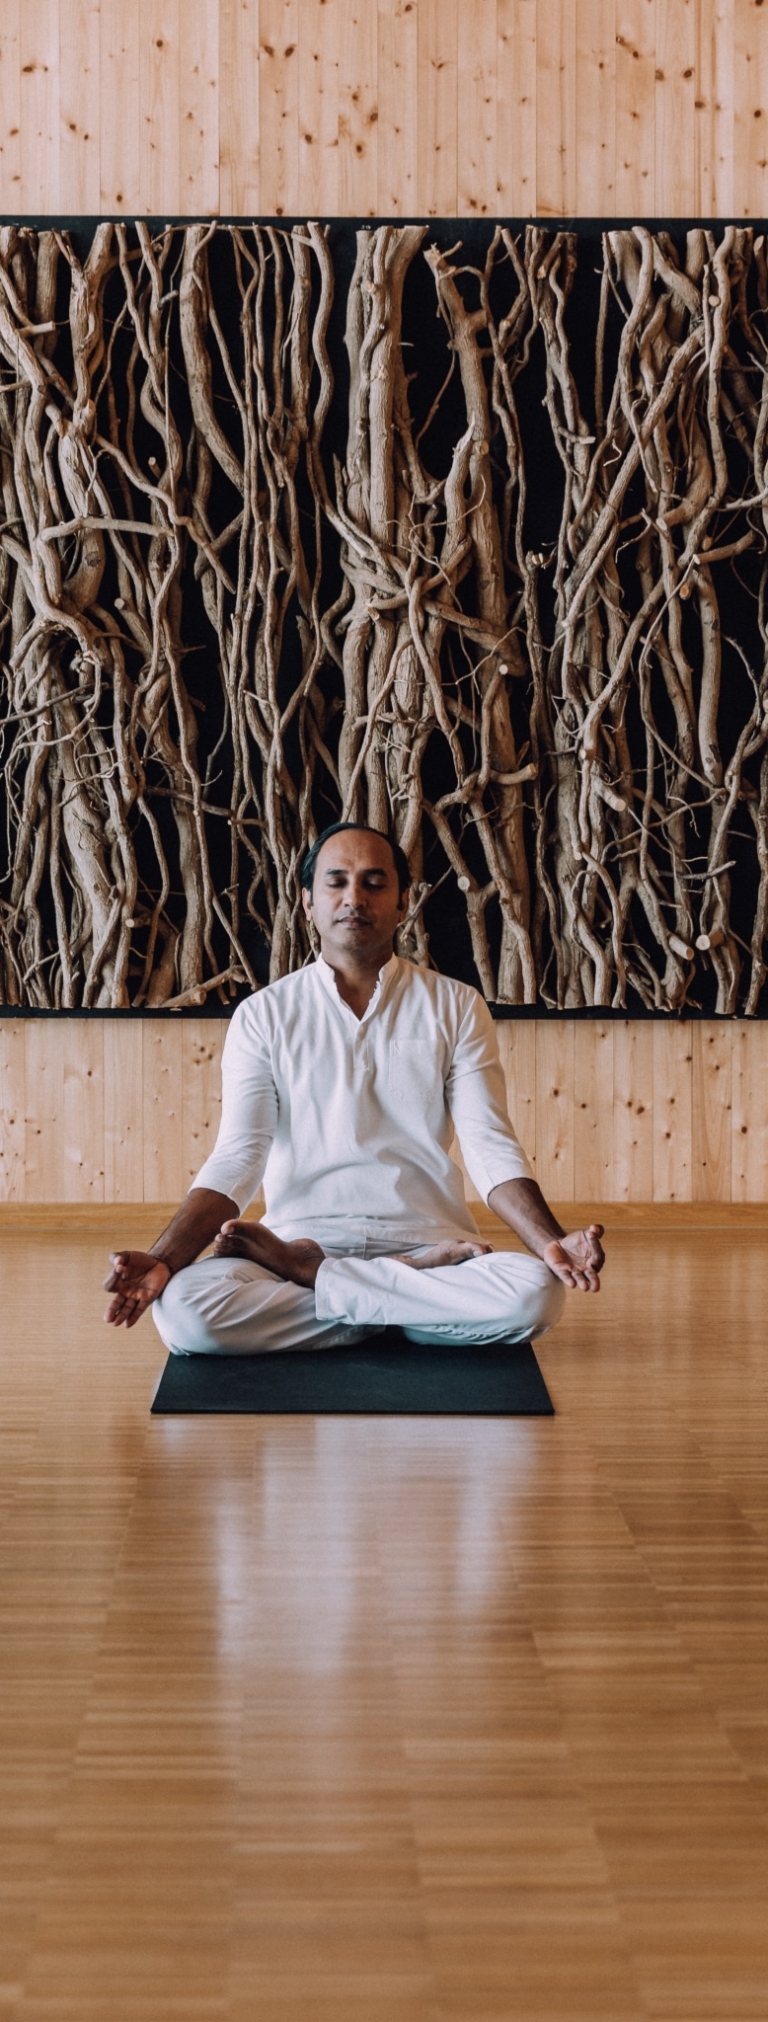 Chamal macht Yoga im Schneidersitz